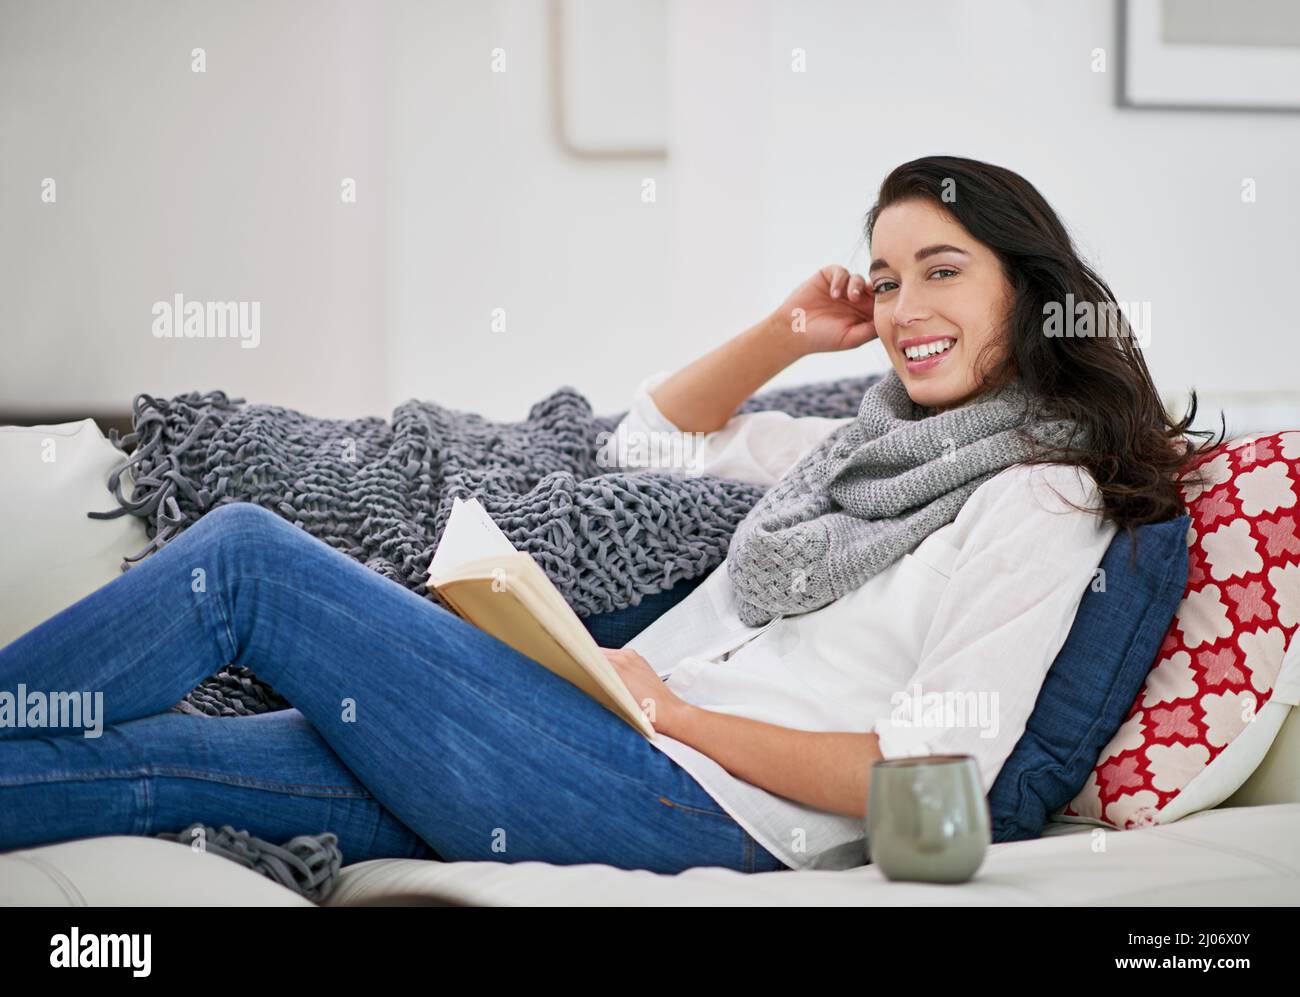 Es gibt keine Freunde, die so loyal sind wie ein Freund. Aufnahme einer jungen Frau, die ein Buch liest, während sie im Wohnzimmer sitzt. Stockfoto